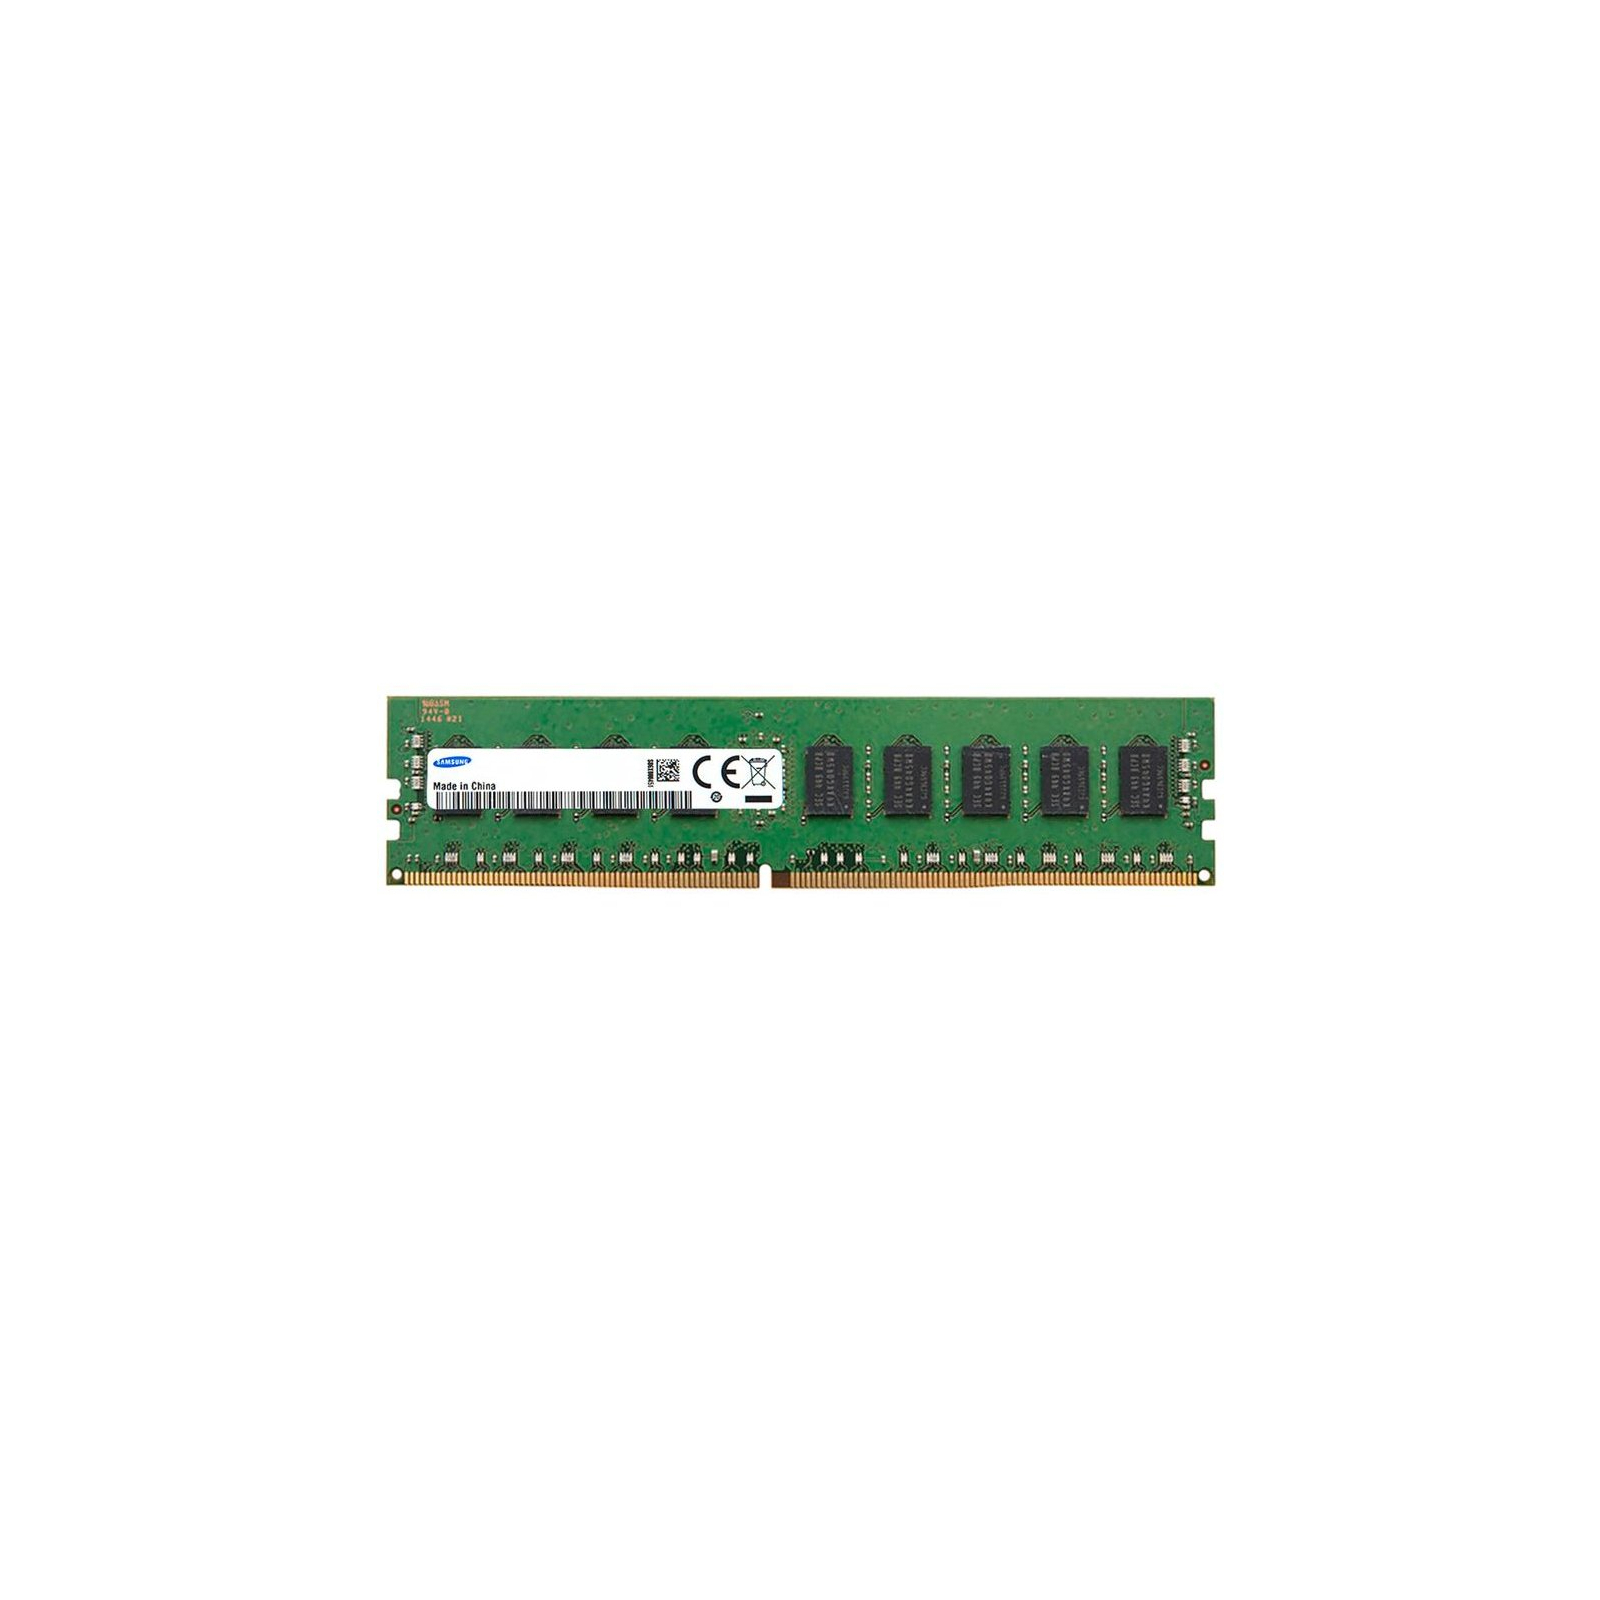 Модуль памяти для сервера DDR4 8GB ECC RDIMM 2666MHz 1Rx8 1.2V CL19 Samsung (M393A1K43BB1-CTD6Q)